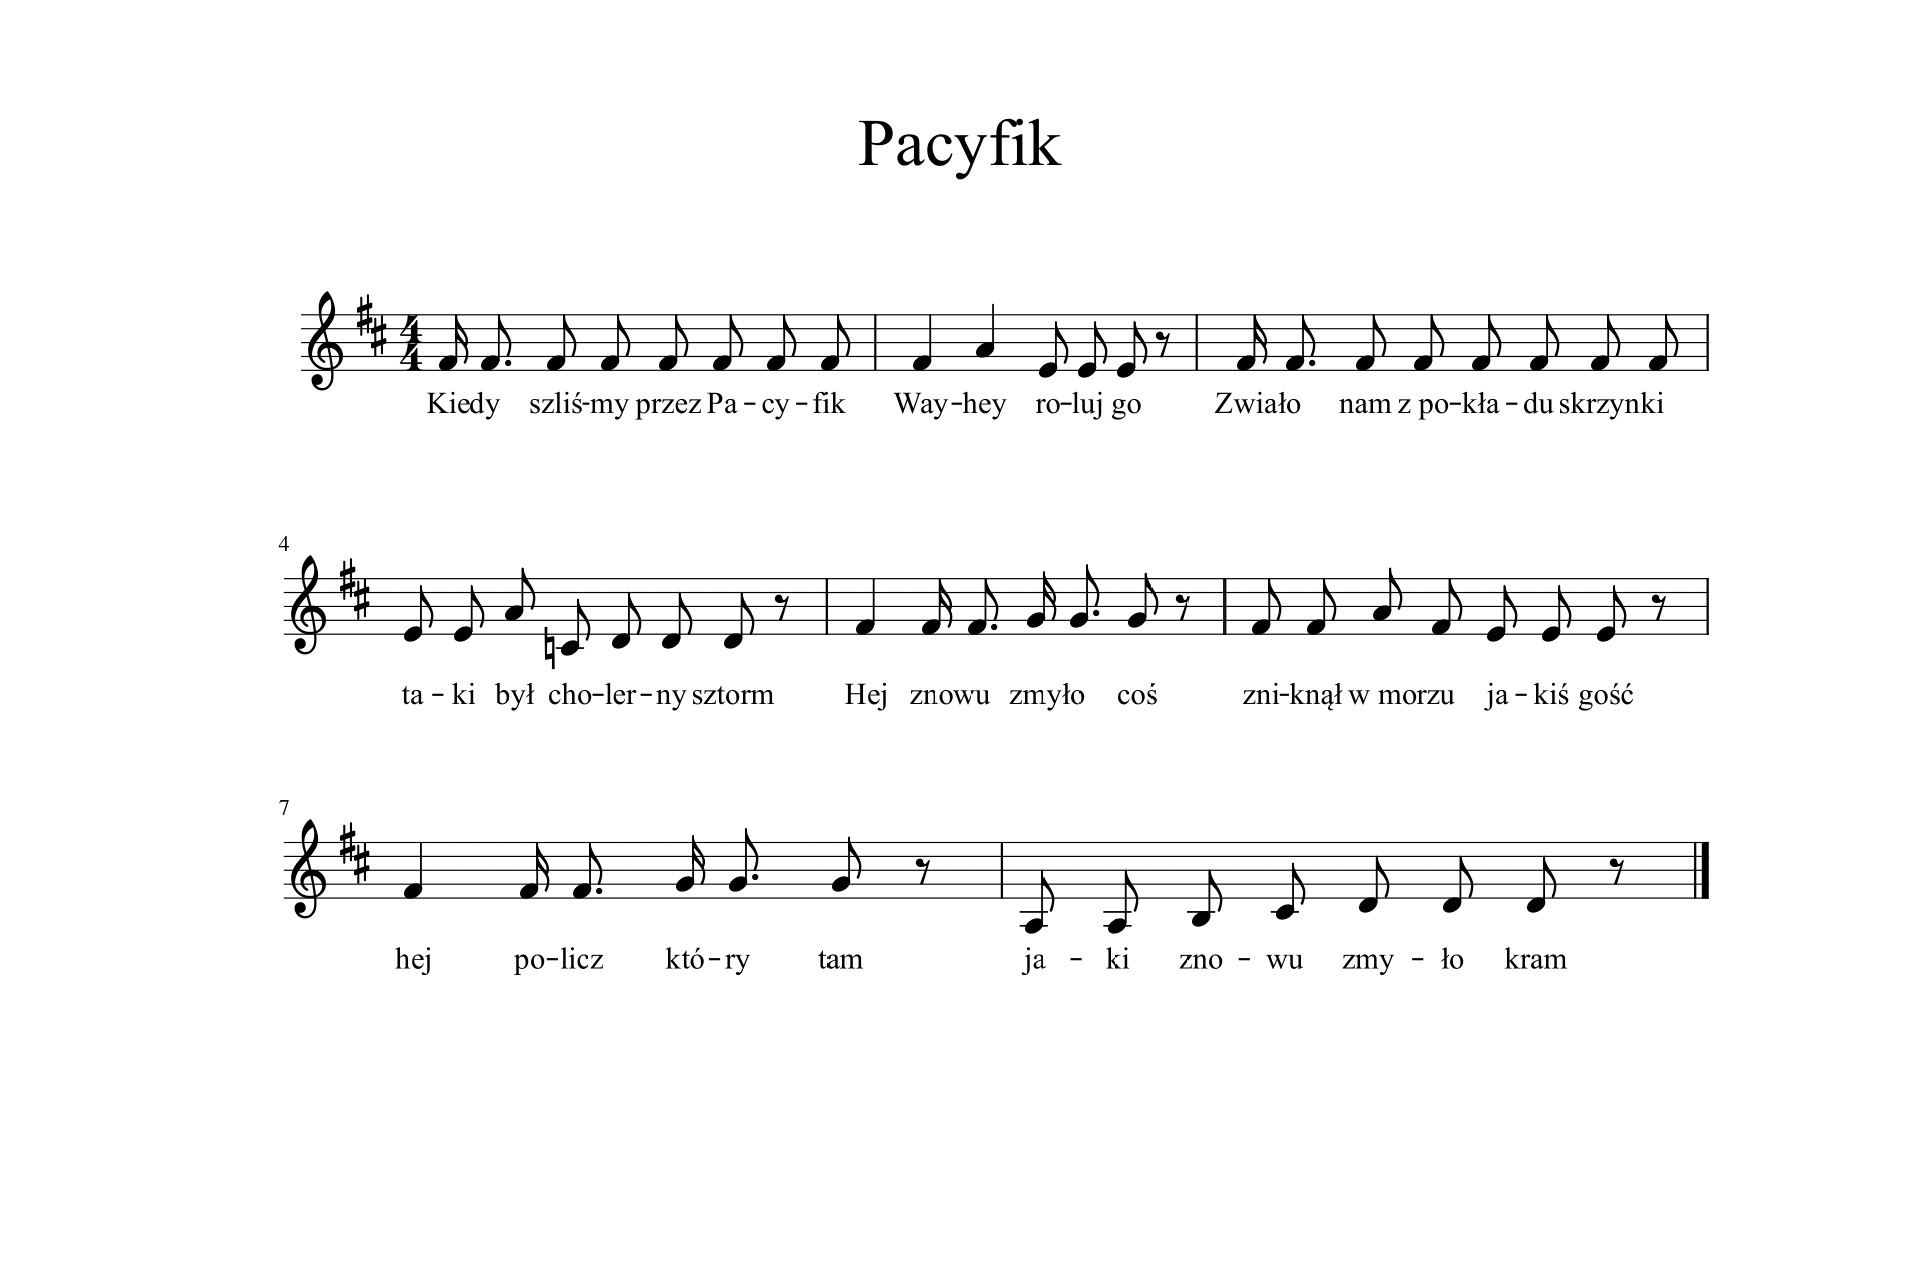 Zapis nutowy piosenki Pacyfik. Zapis składa się z ośmiu taktów. Metrum cztery czwarte, tonacja D-dur. Przeważają drobne wartości rytmiczne - ósemki.